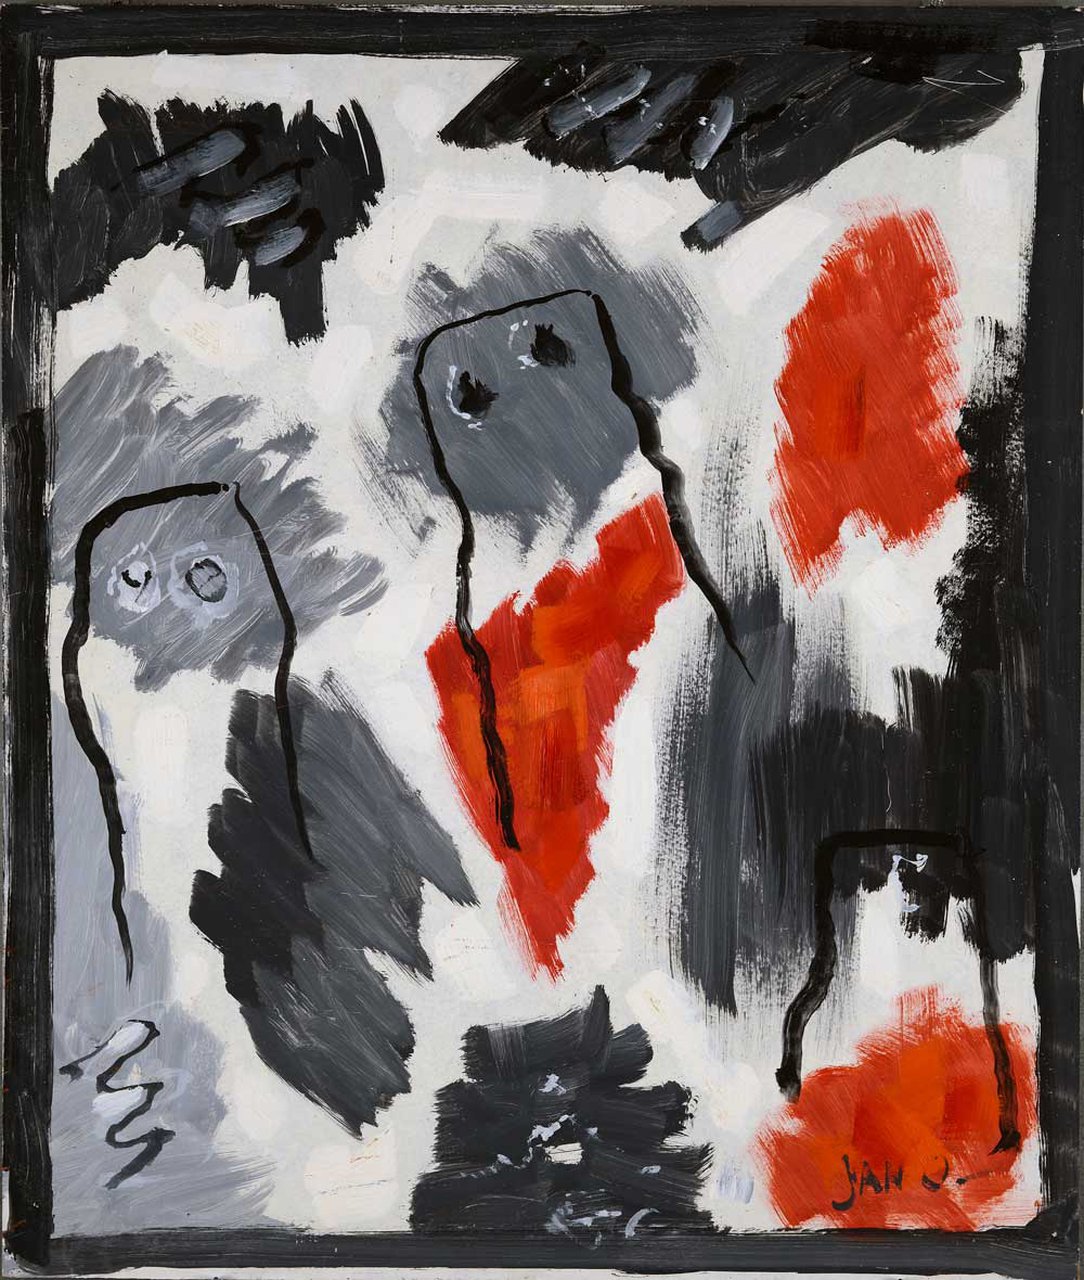 Schilderij - Drie figuren - Jan Oosterman - 1992